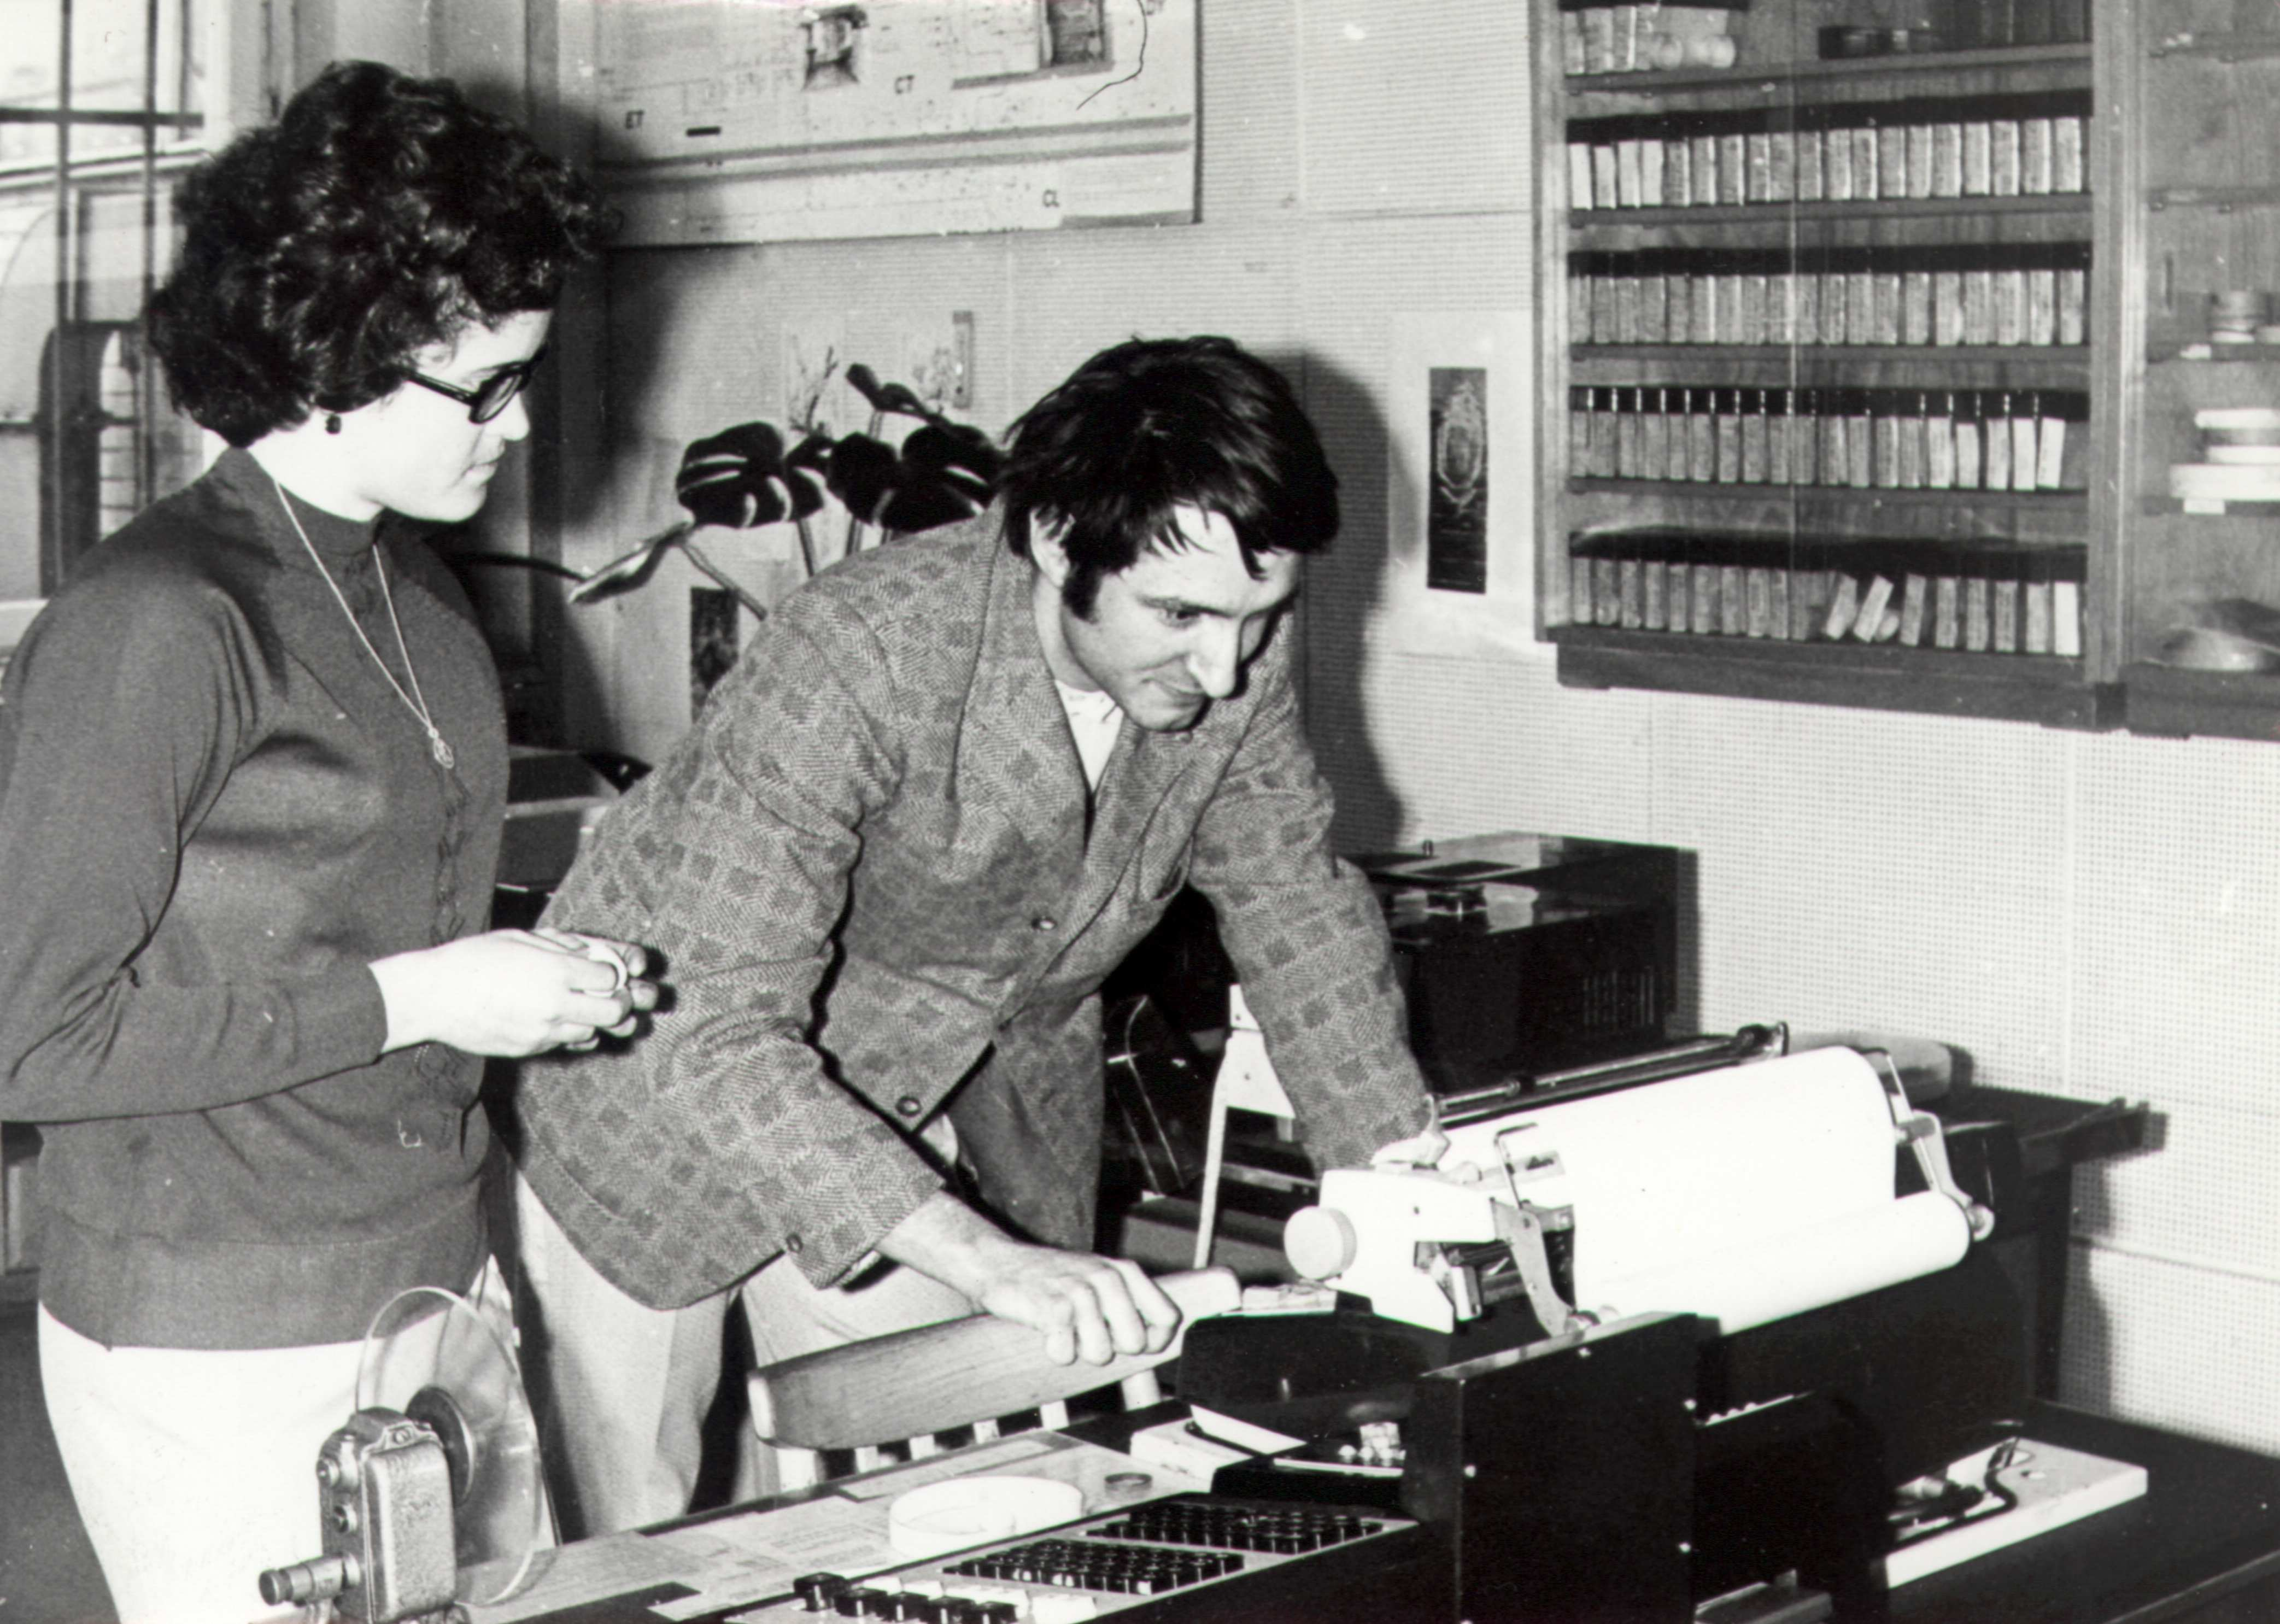 Obrázek 1: Studenti u operátorske konzoly počítače MSP 2A strojů byl dodán brněnskému VUT a zpočátku byl umístěn v budově na Antonínské, tedy za rohem.